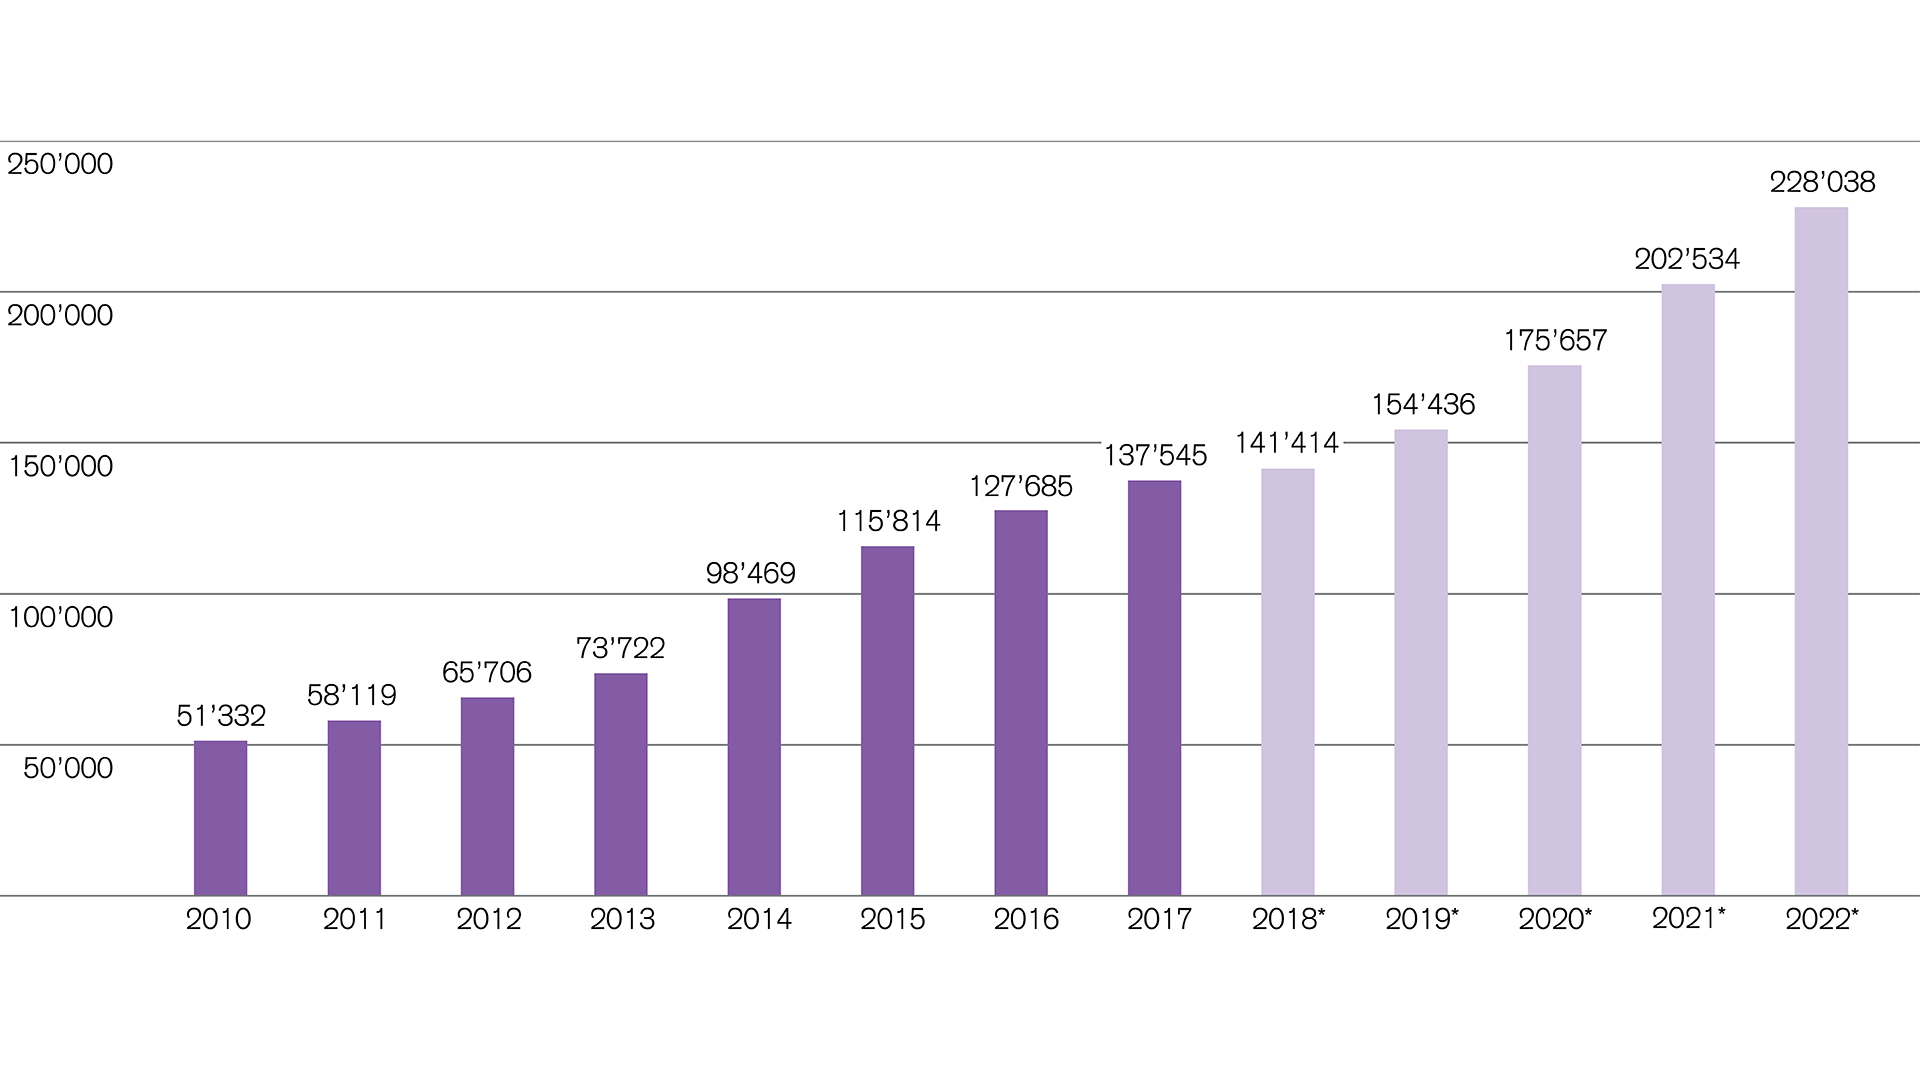 biotechnologie-verkaufszahlen-in-usd-von-2010-bis-2022